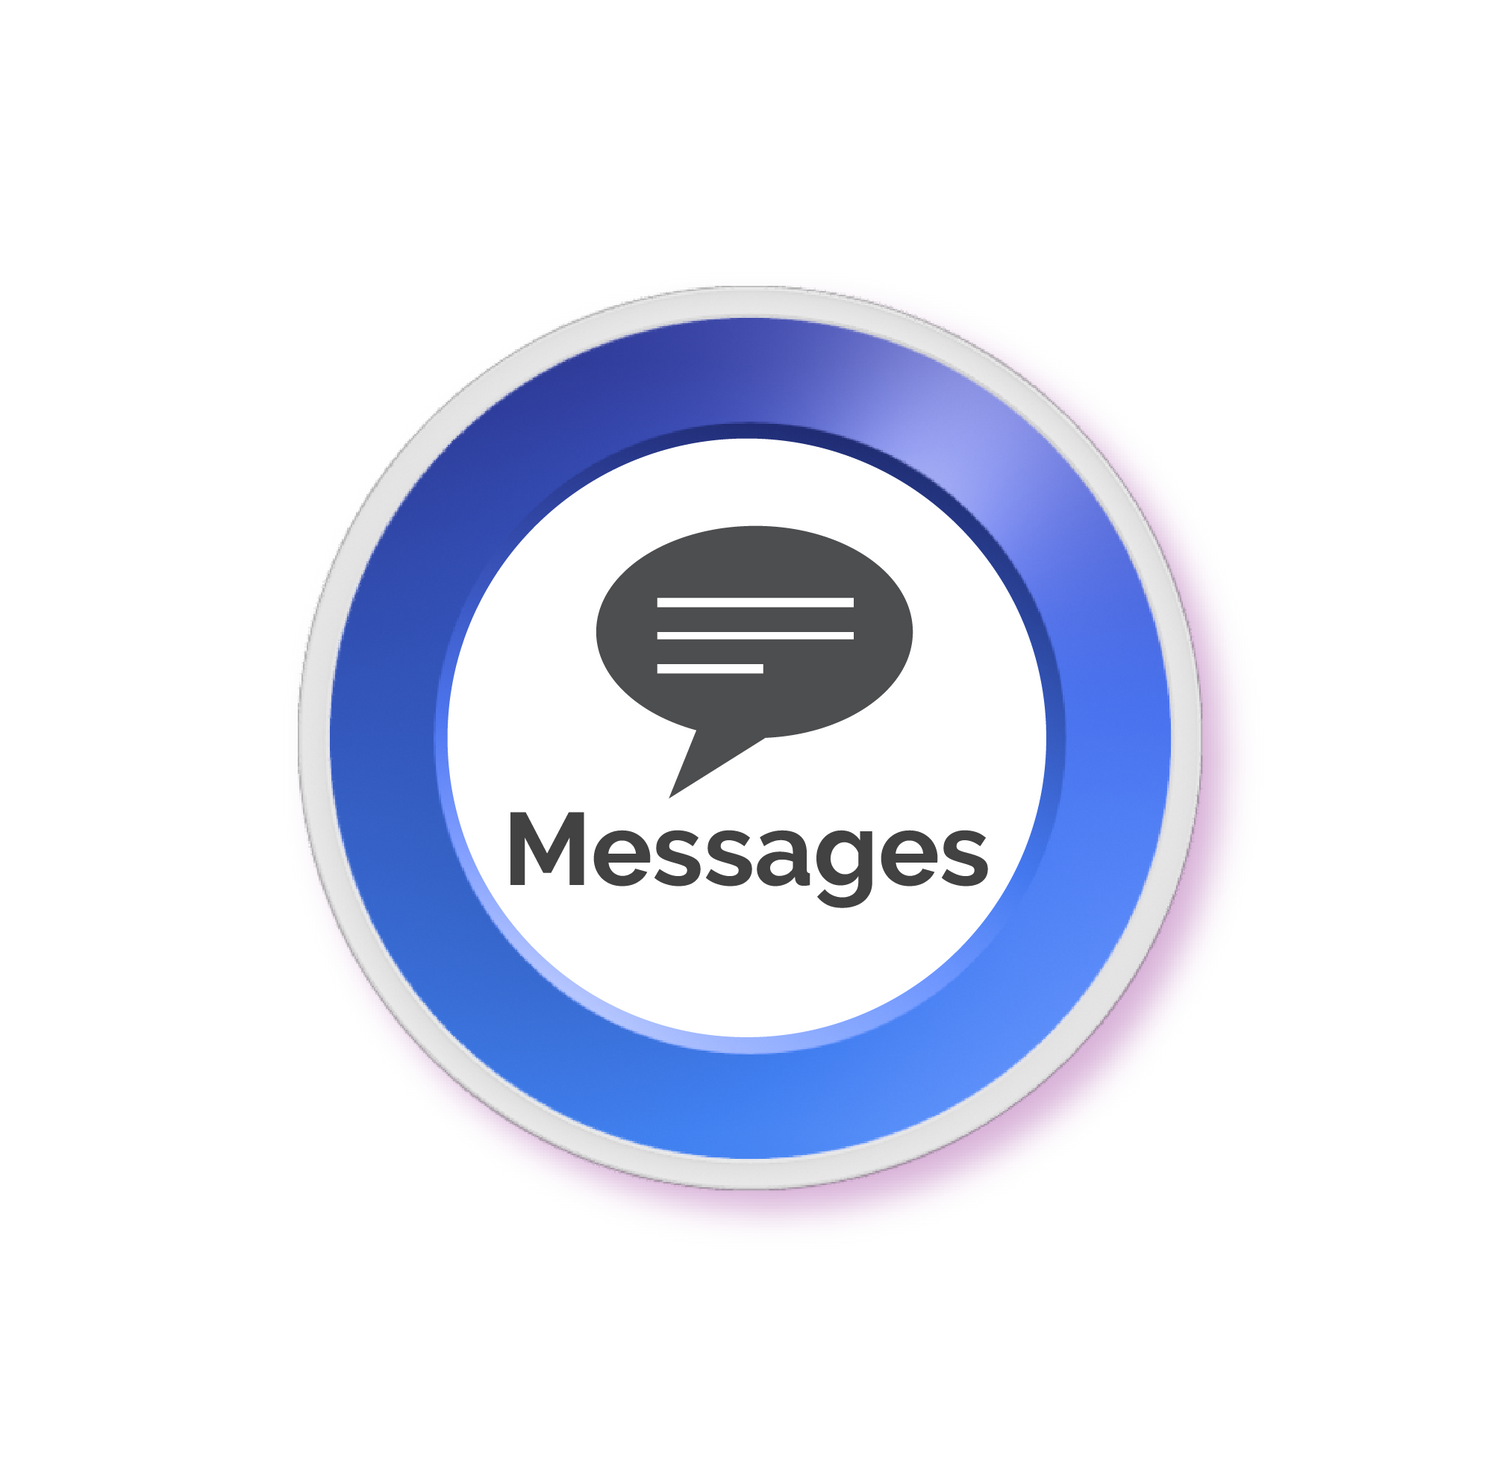 Messages button